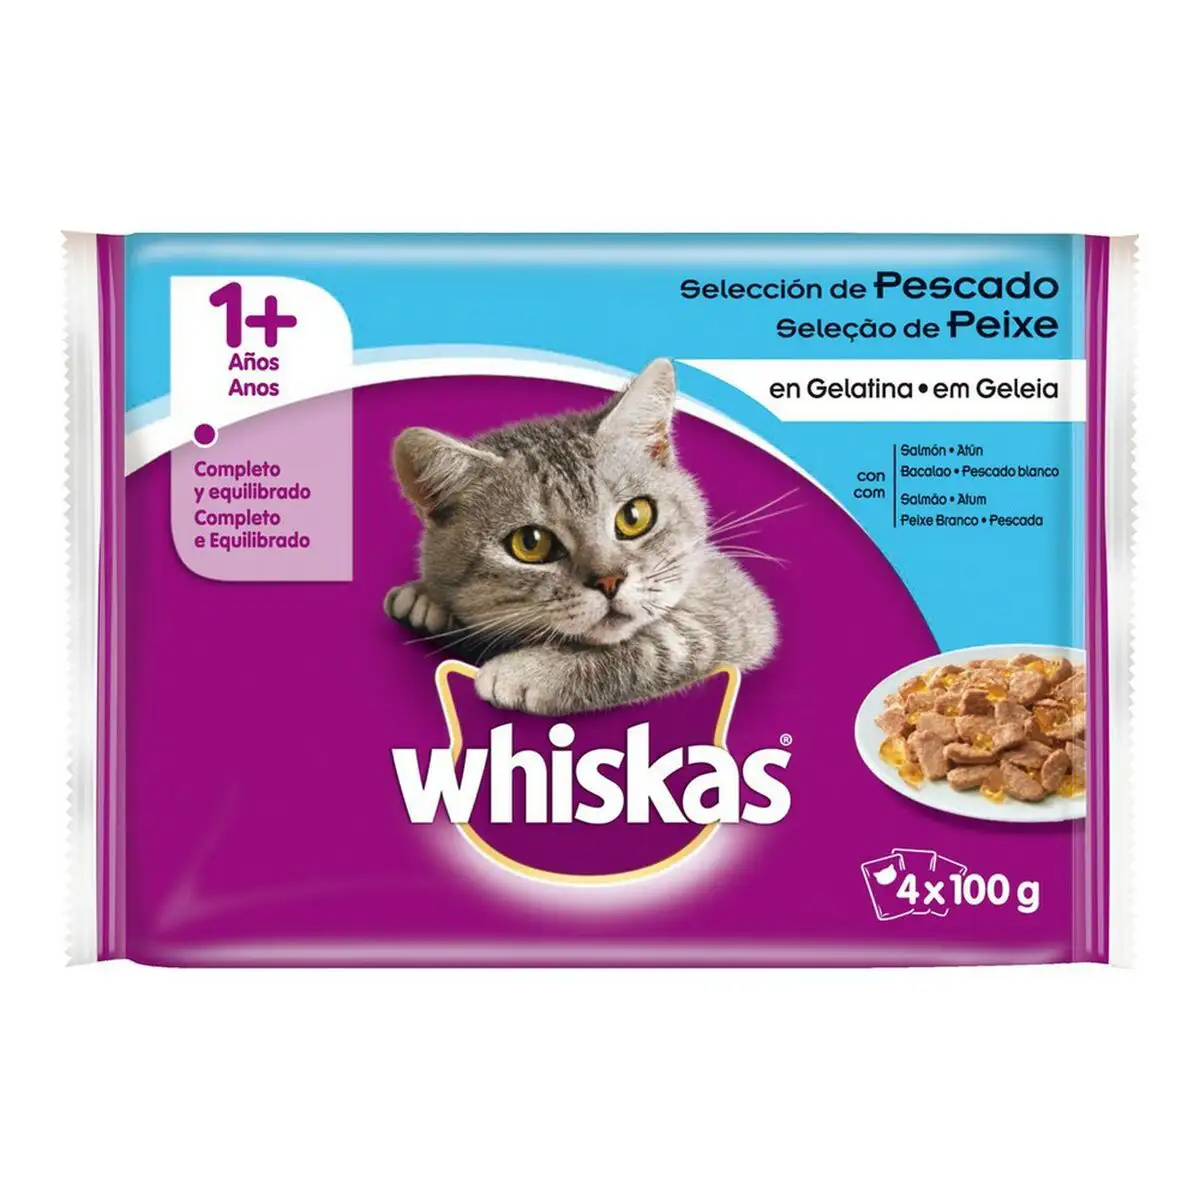 Aliments pour chat whiskas 150810 4 x 100 g _3226. DIAYTAR SENEGAL - Votre Destination pour un Shopping Inoubliable. Naviguez à travers notre catalogue et choisissez des produits qui vous marquent par leur originalité.